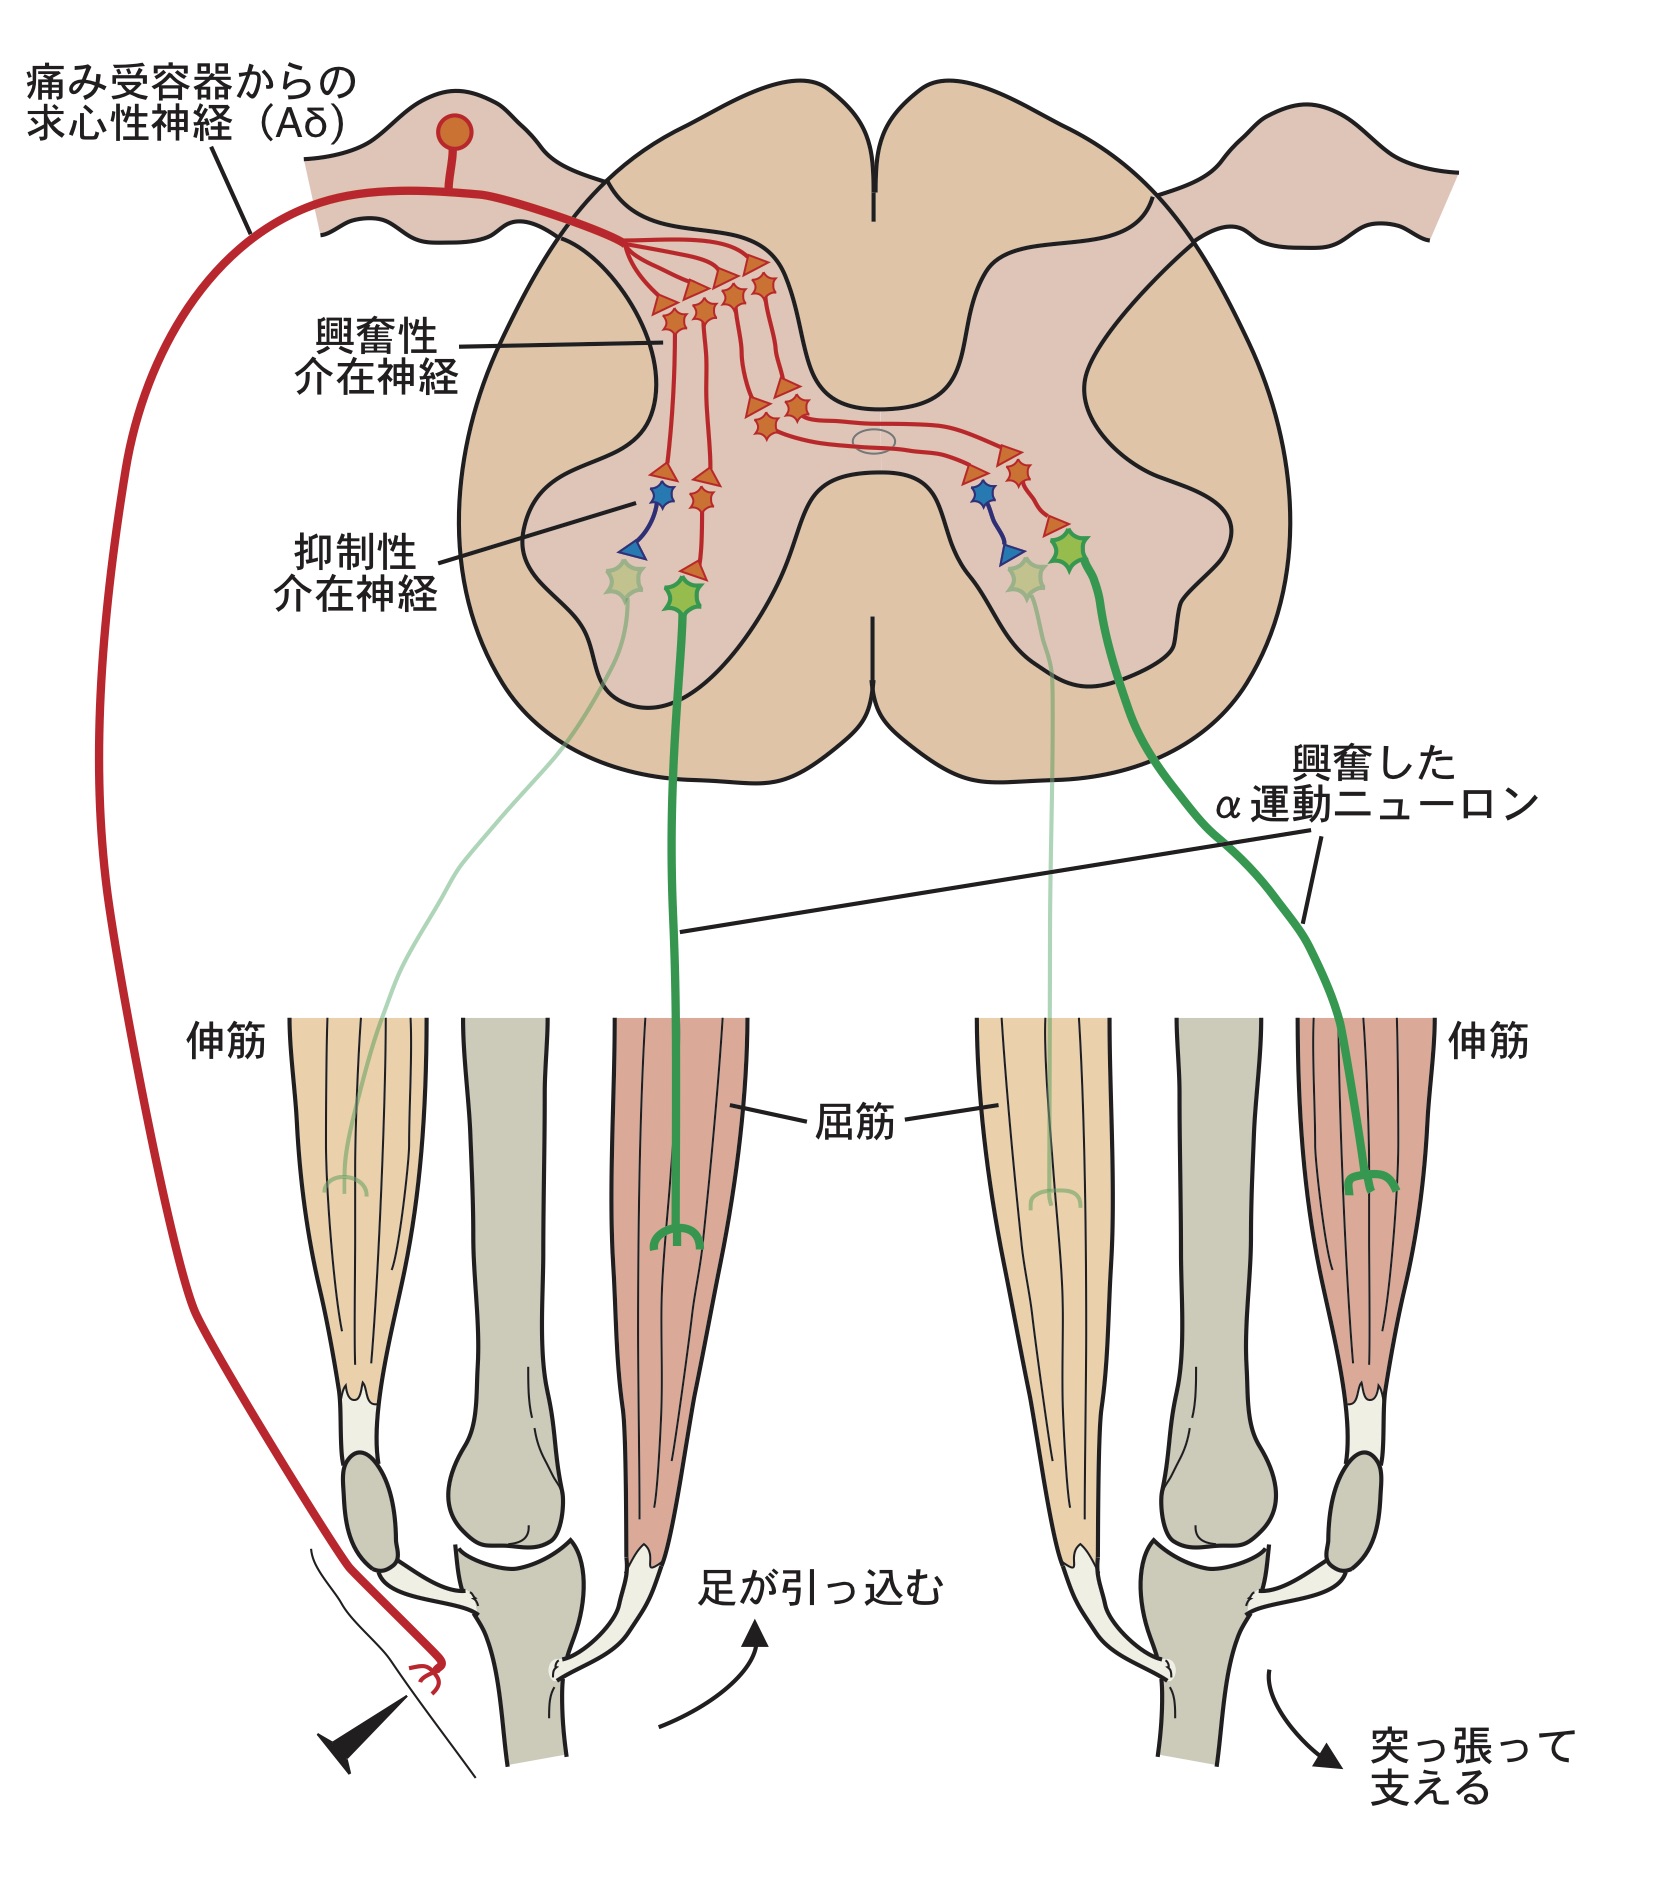 図2．屈曲反射の反射弓 片方の足などに痛み刺激が加わると、痛み受容器が活動する。その活動は求心性神経を通って脊髄に入り、屈筋を興奮させ、伸筋を抑制する。すると痛みを受けた足は痛みを避けるように上がる。これと同時に、対側に投射する介在細胞によって、逆の足が踏ん張れるように、伸筋を興奮させ、屈筋を抑制する。これで、痛みから逃げても身体が倒れることはない。